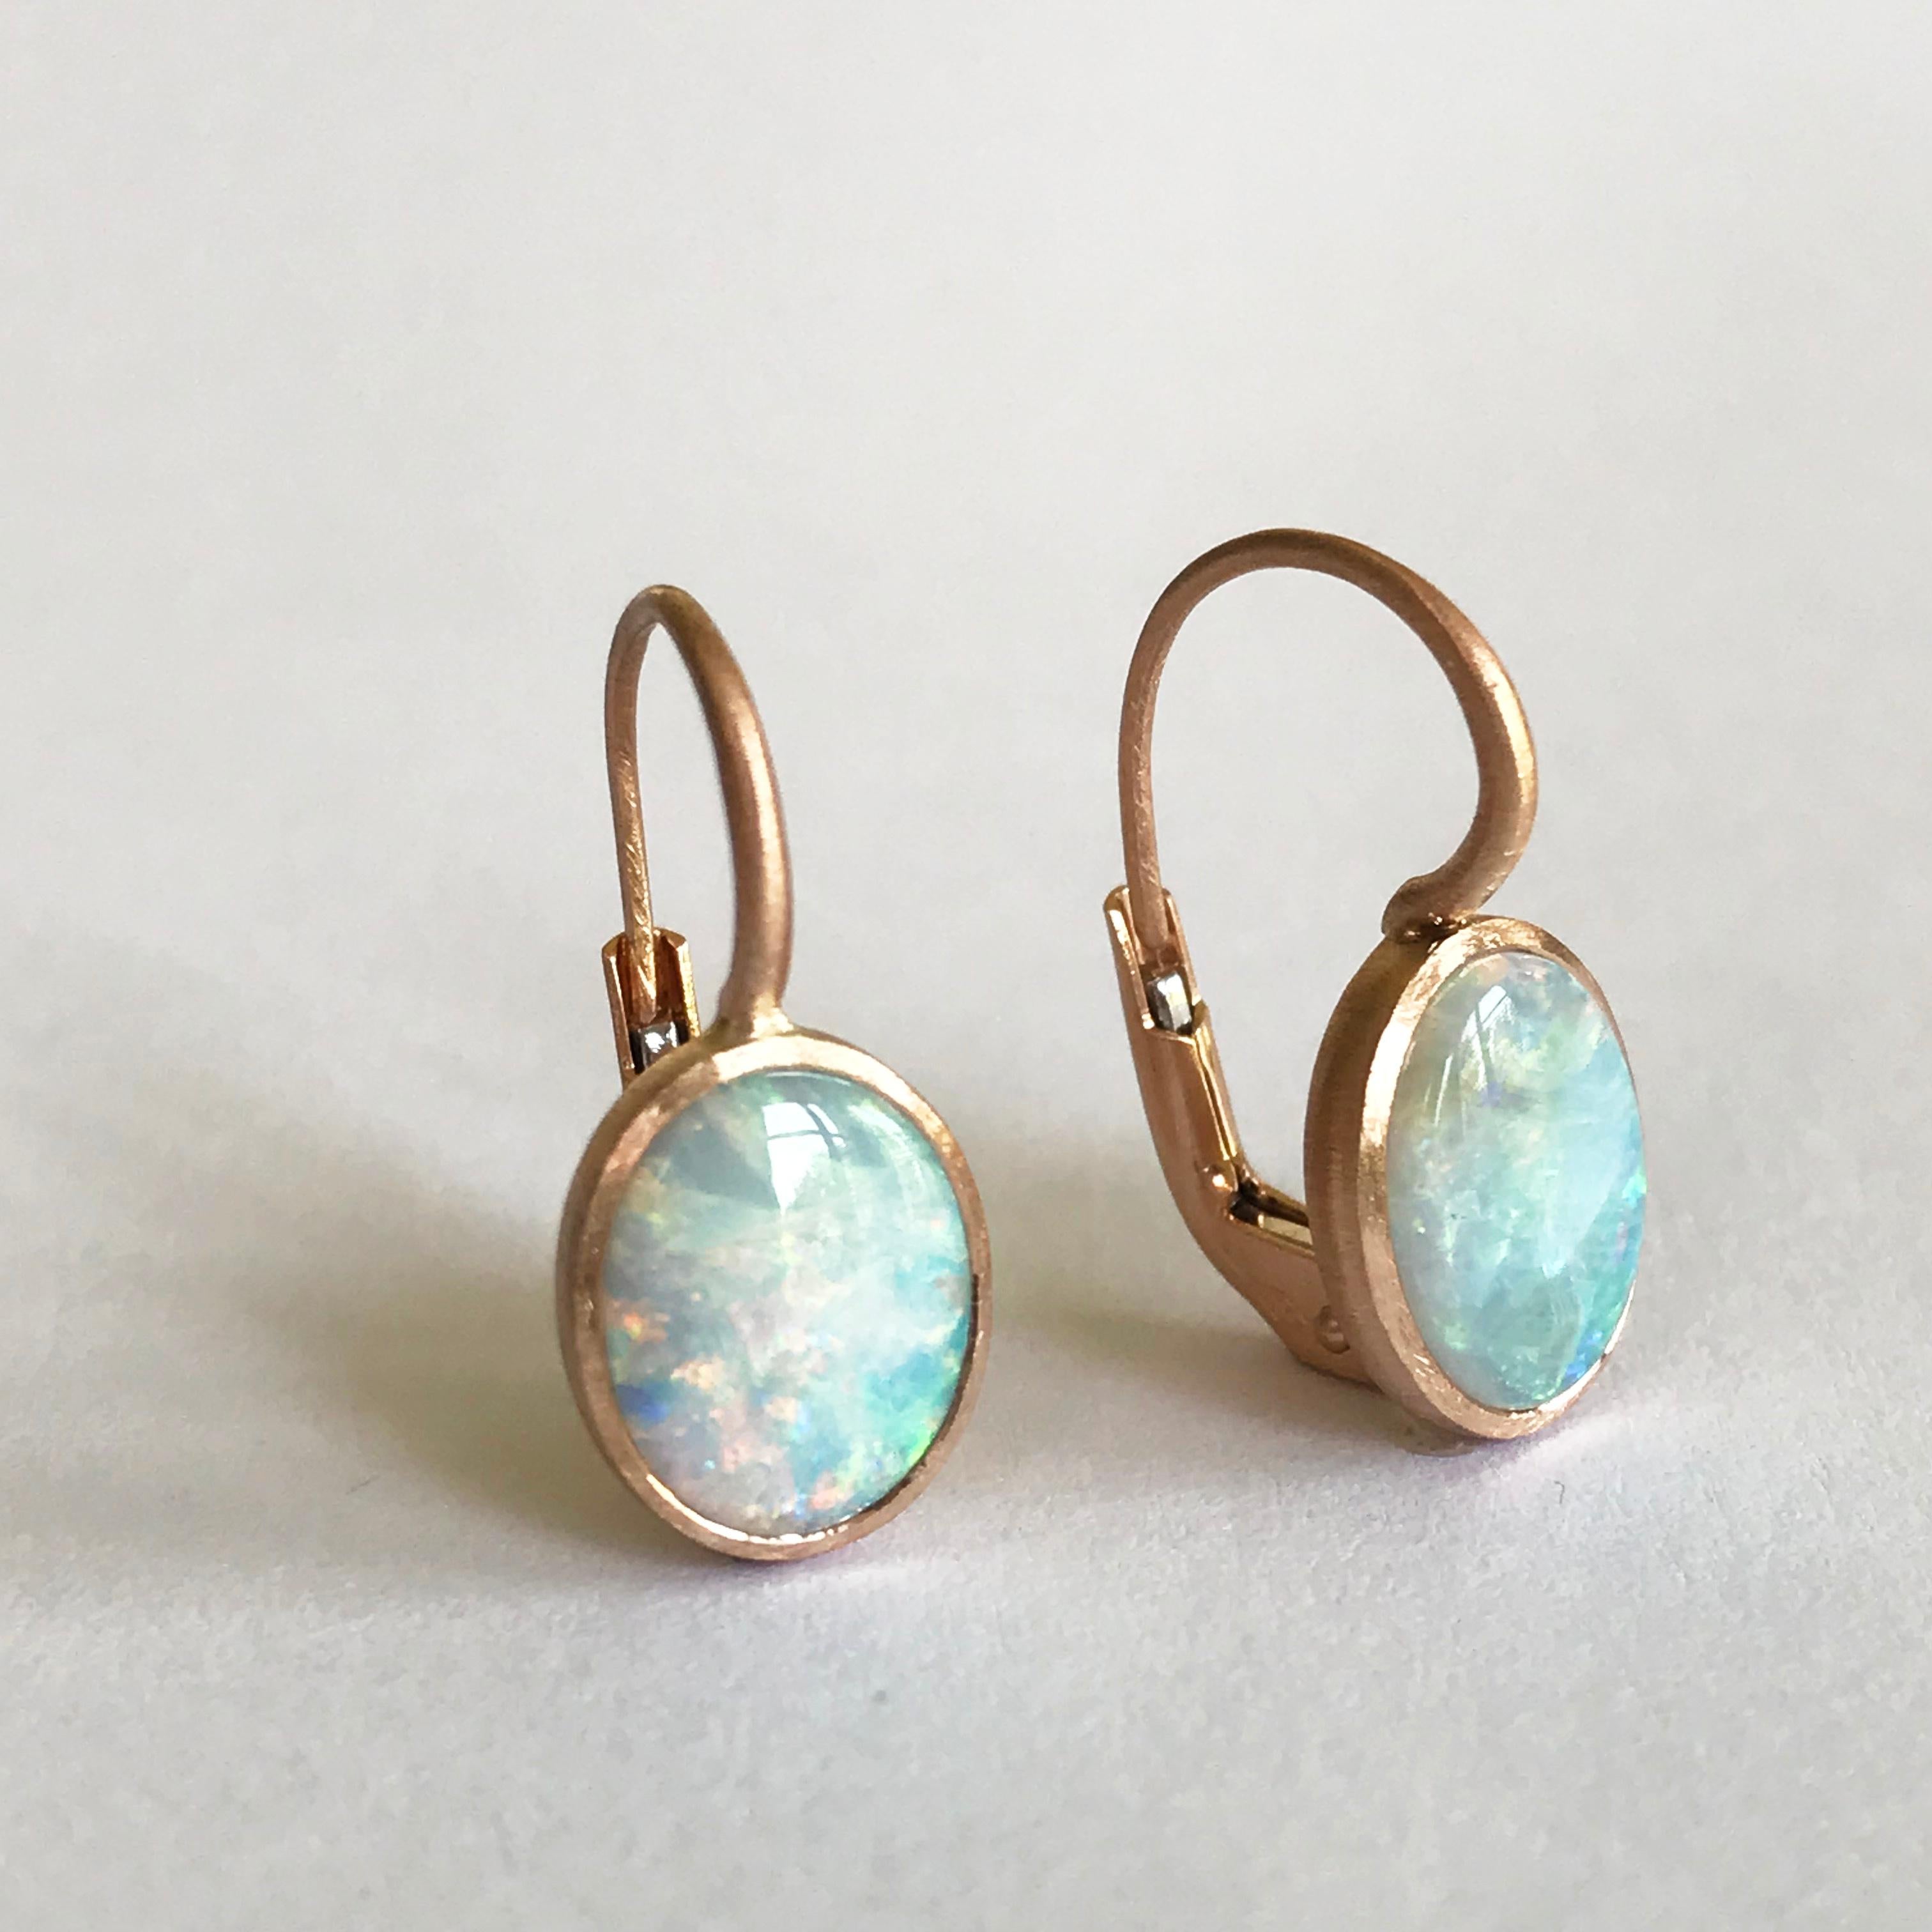 Dalben Little Oval Australian Opal Rose Gold Earrings For Sale 2